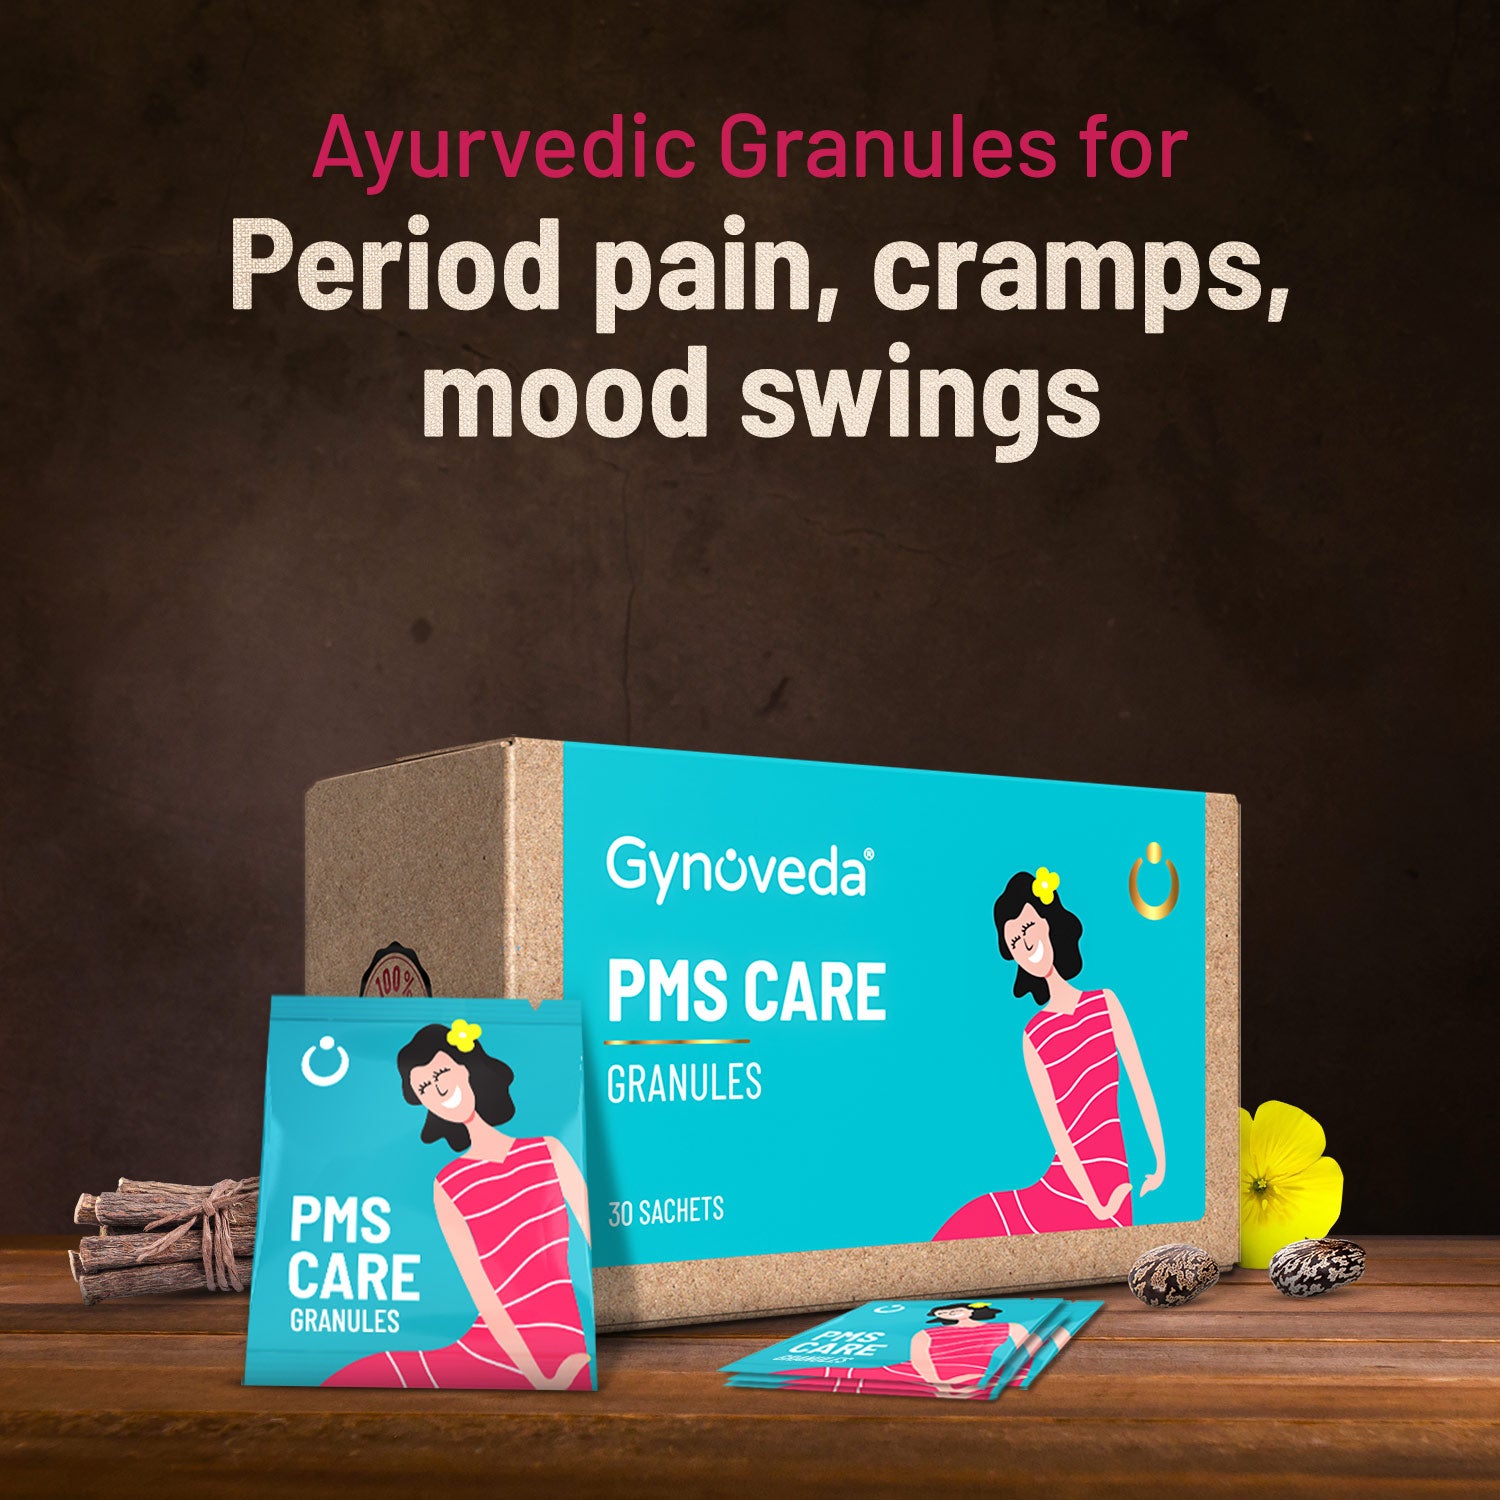 PMS Care Ayurvedic Granules